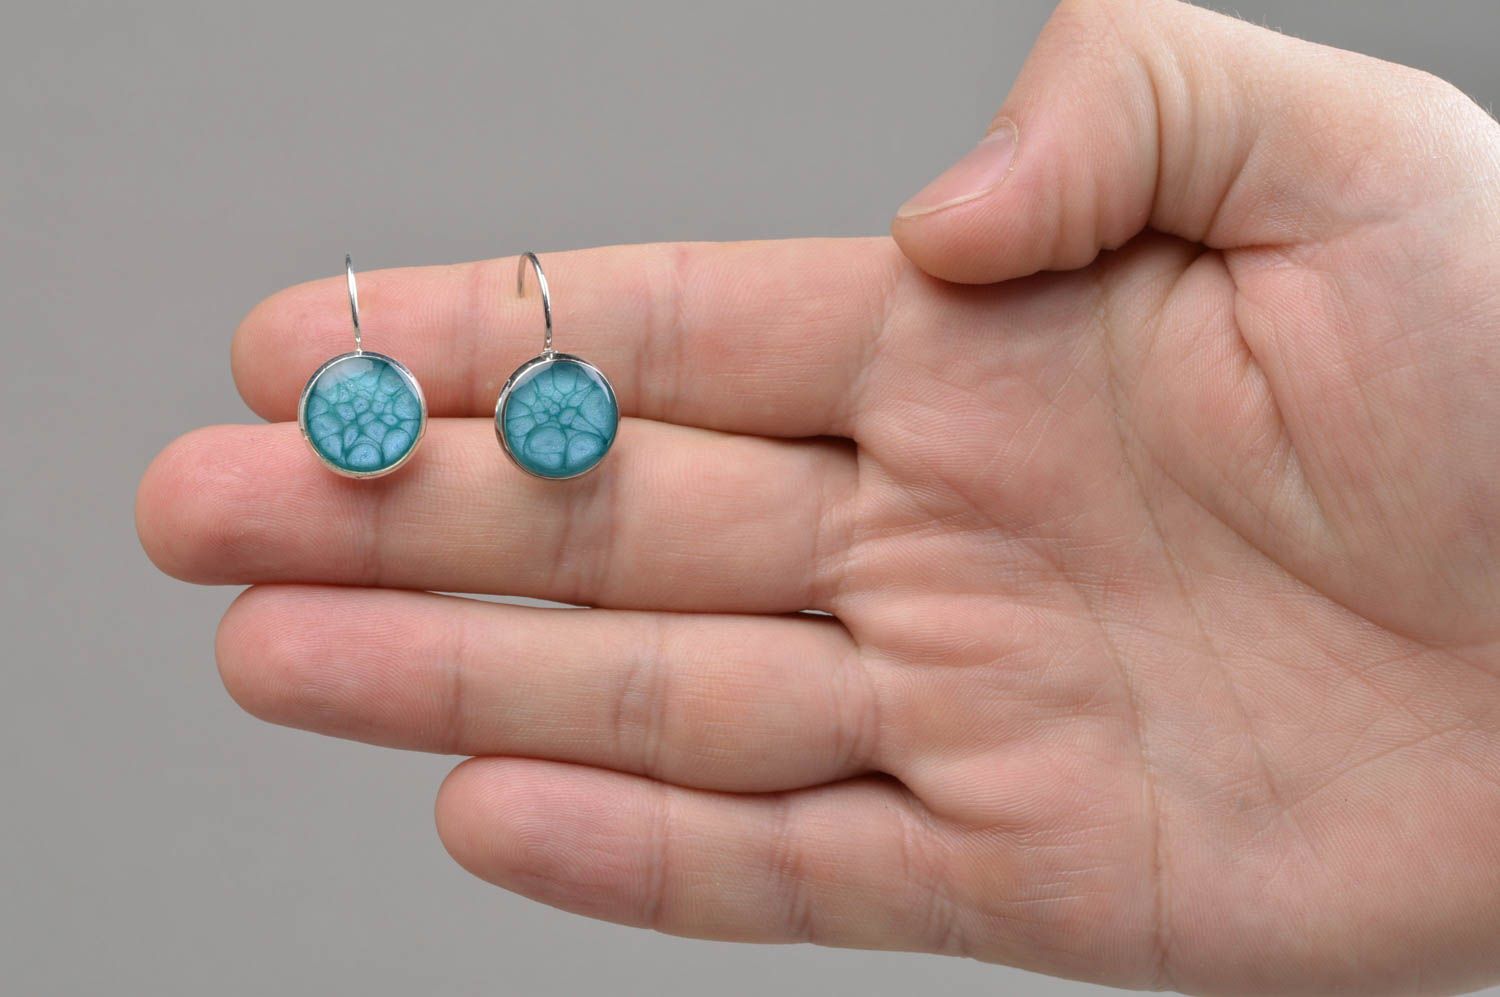 Boucles d'oreilles artisanales rondes bleues stylées faites main en résine époxy photo 4